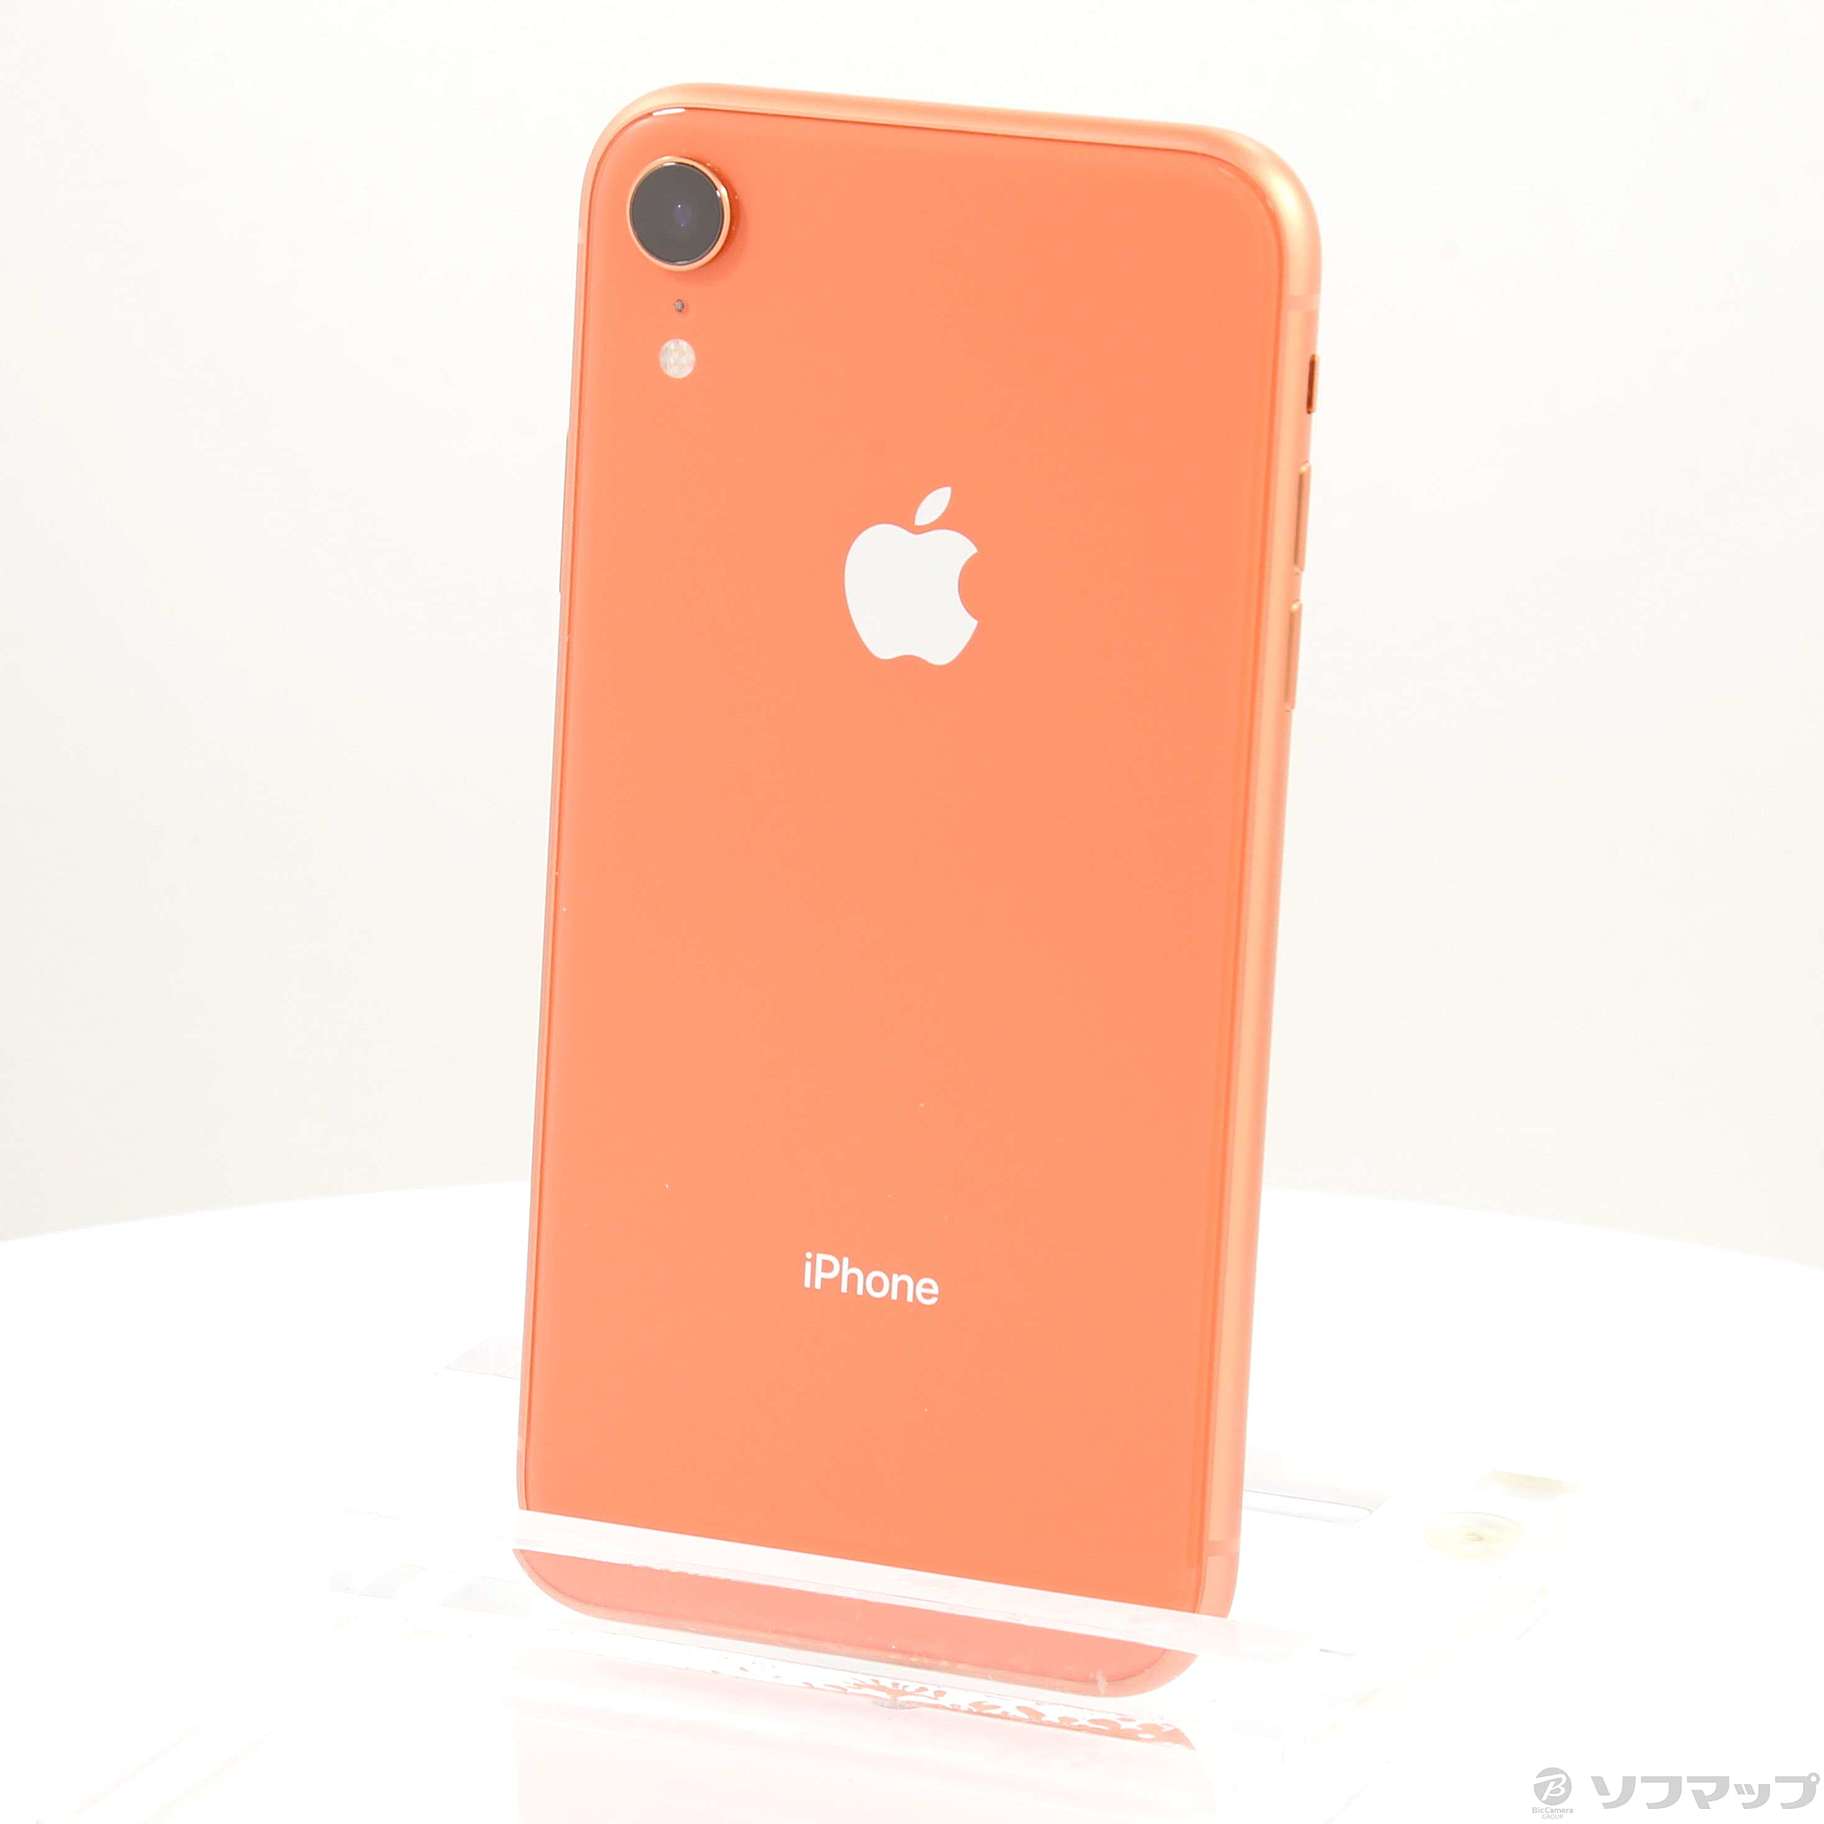 iPhone XR coral 64GB SIMフリー